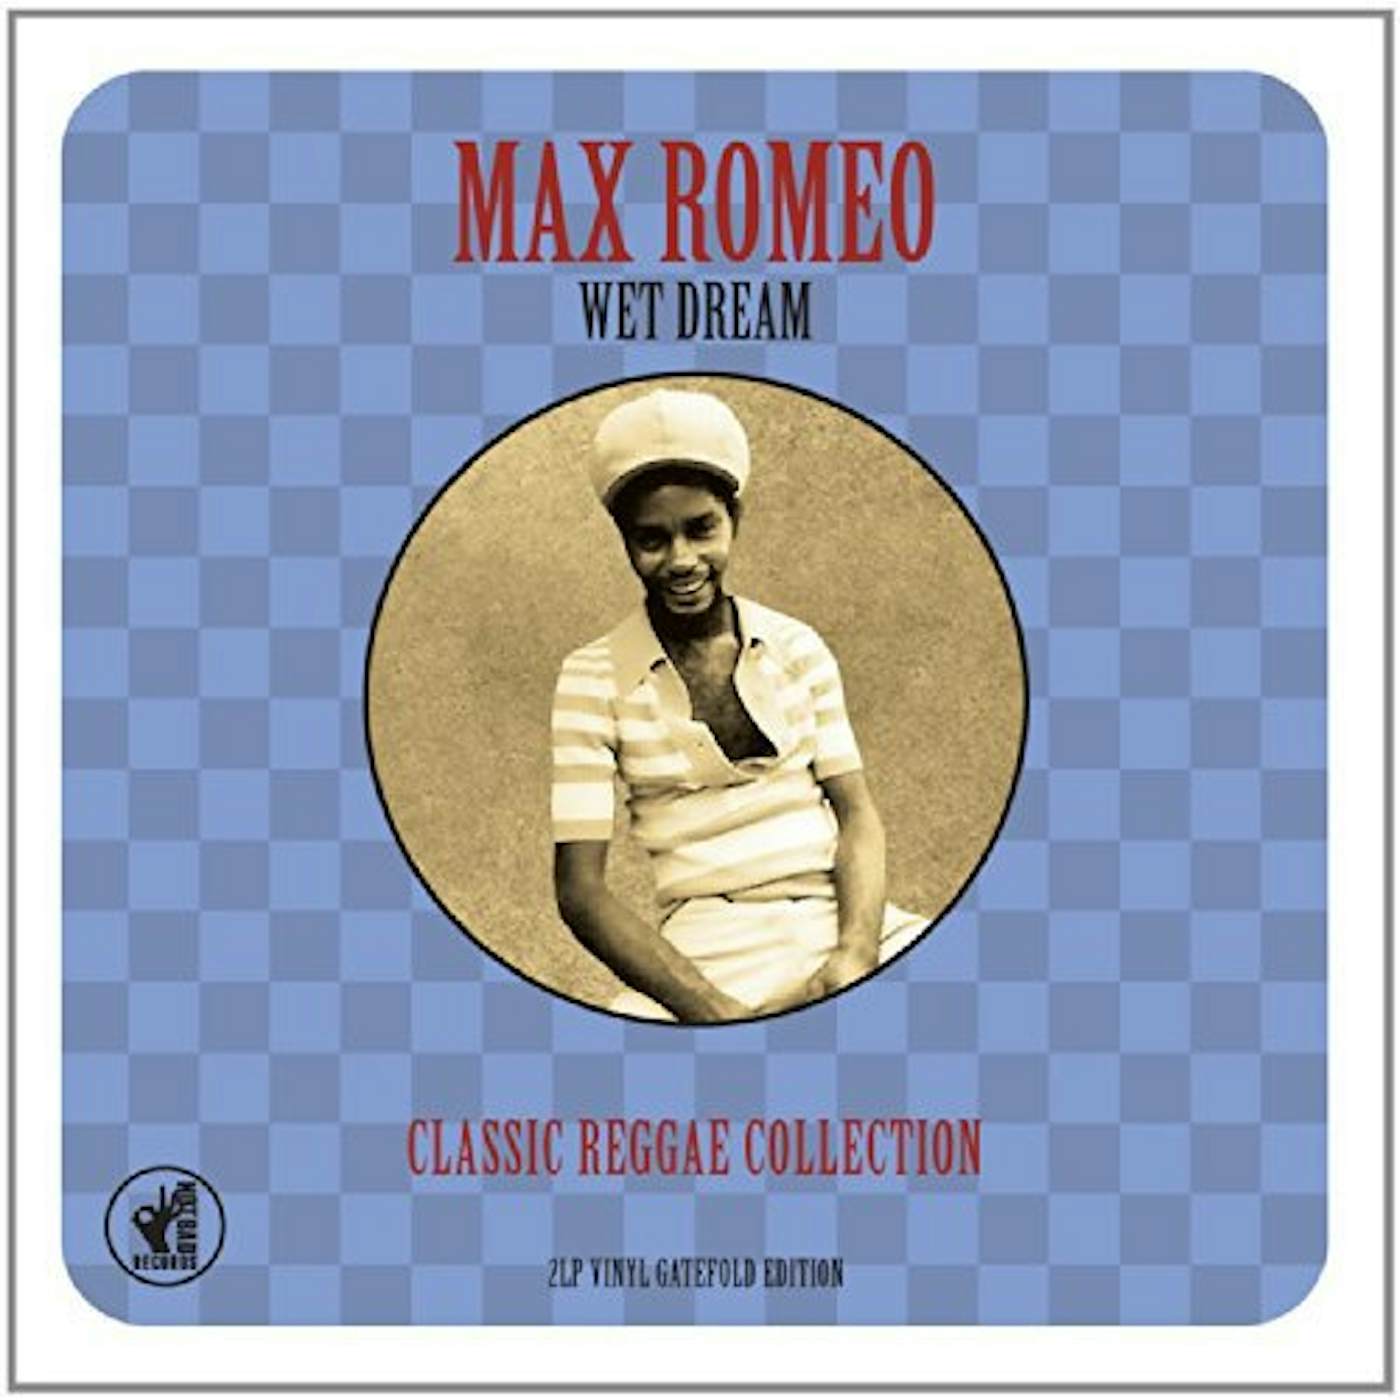 Max Romeo WET DREAM CLASSIC REGGAE COLLECTION Vinyl Record